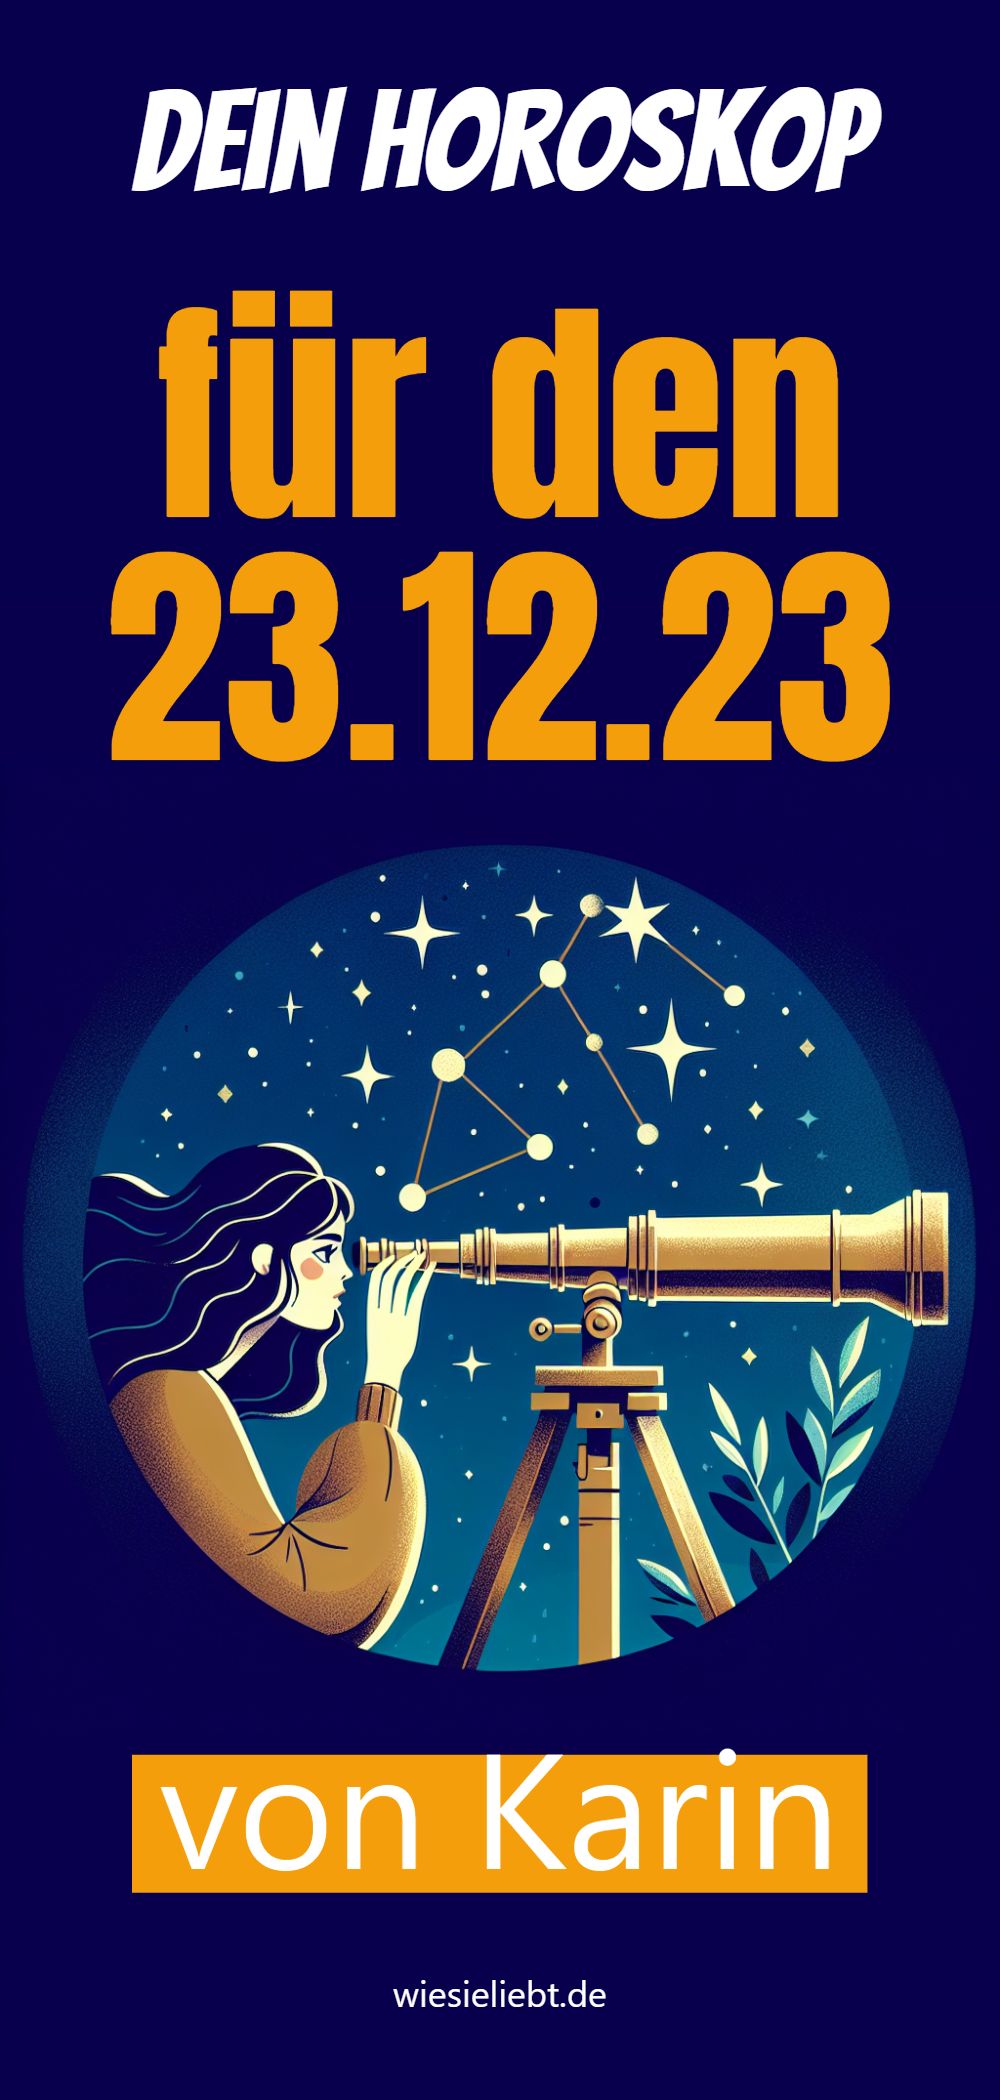 Dein Horoskop für den 23.12.23 von Karin